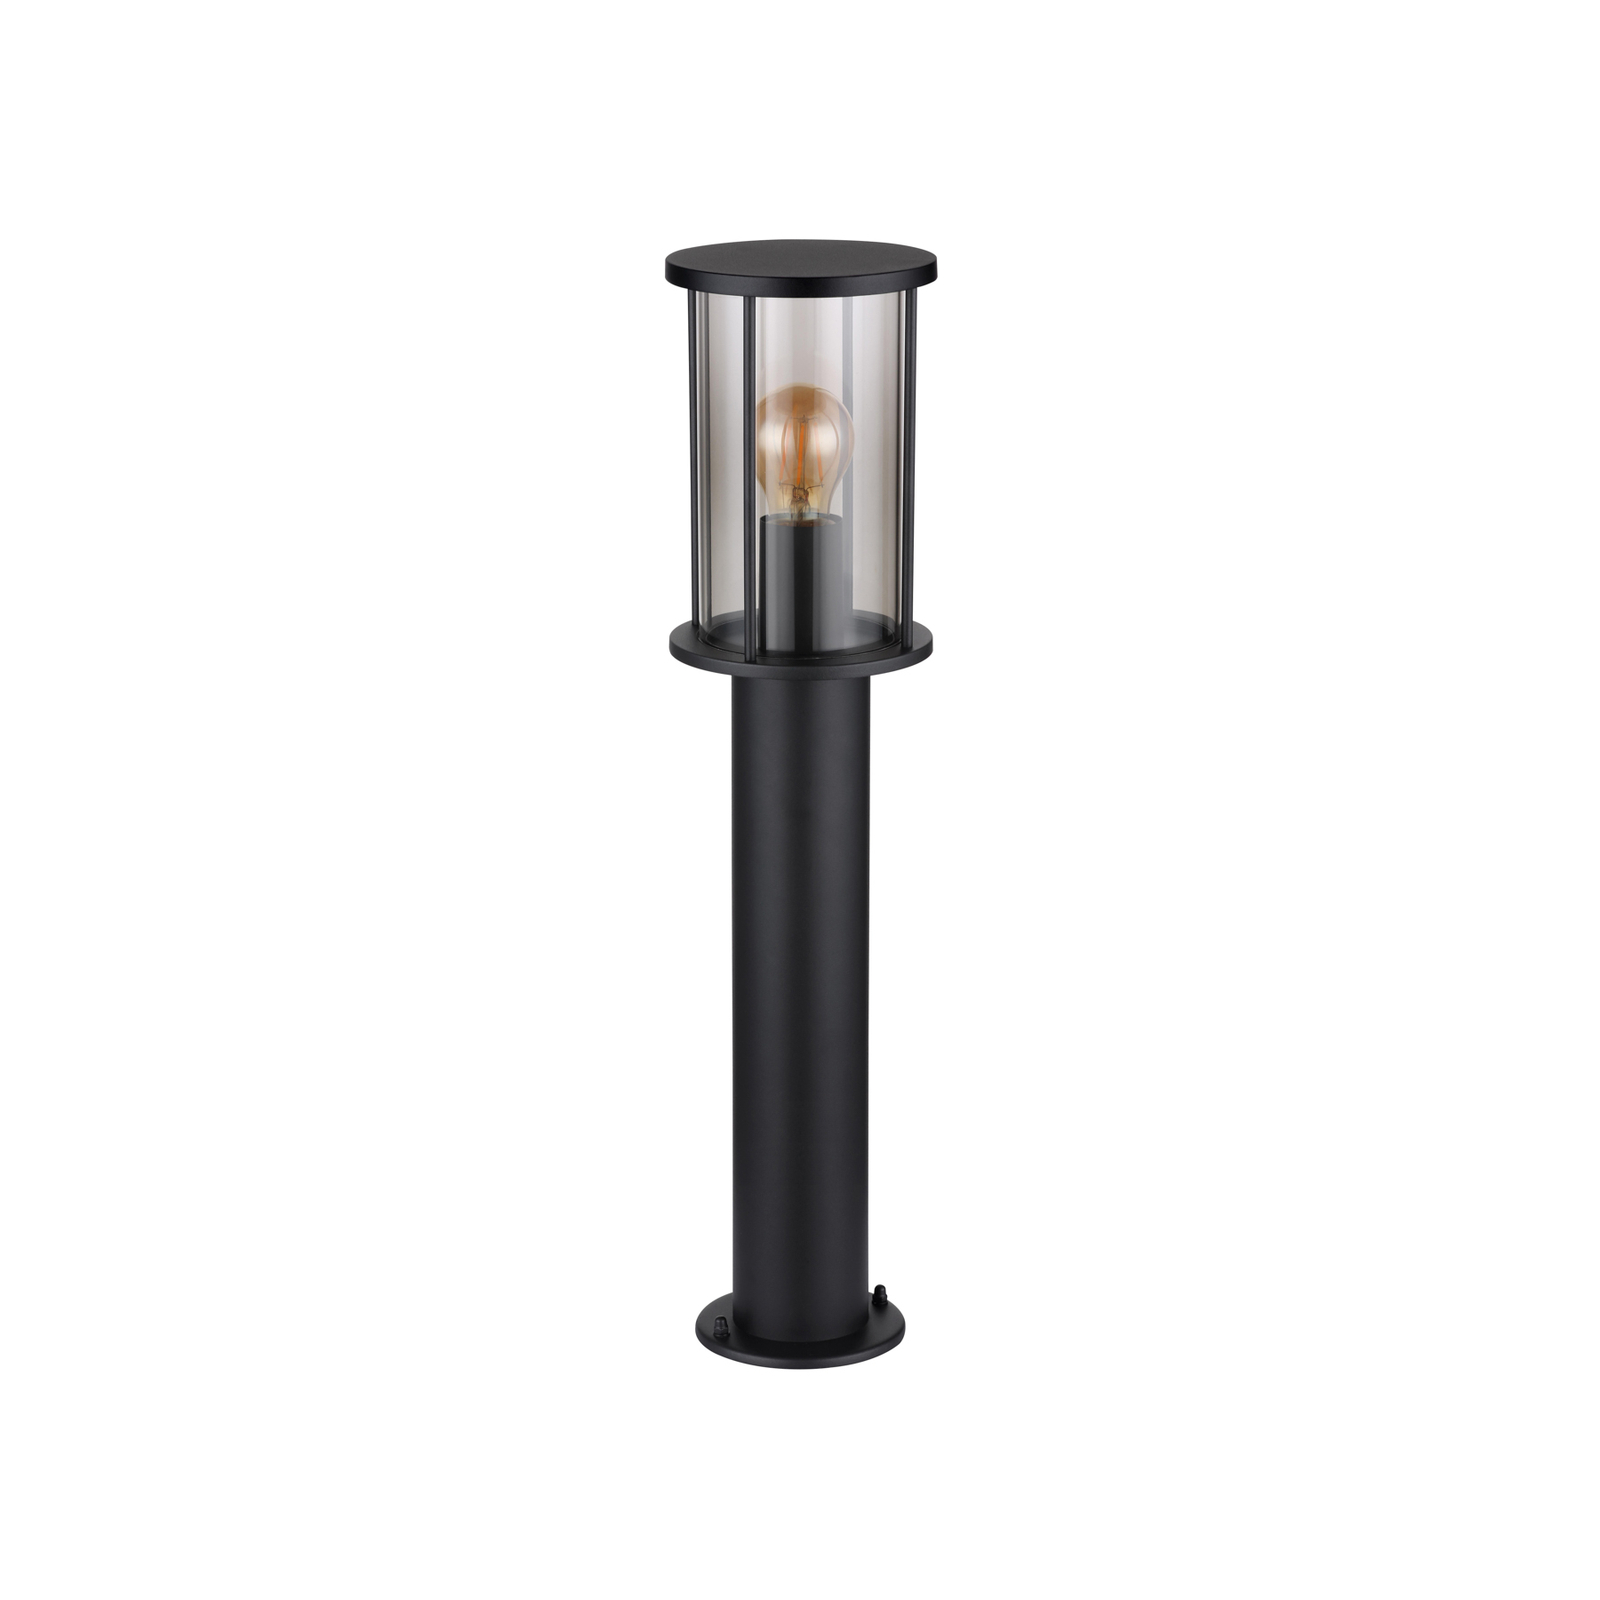 Luminaire pour socle Gracey, hauteur 60 cm, noir, inox, IP54